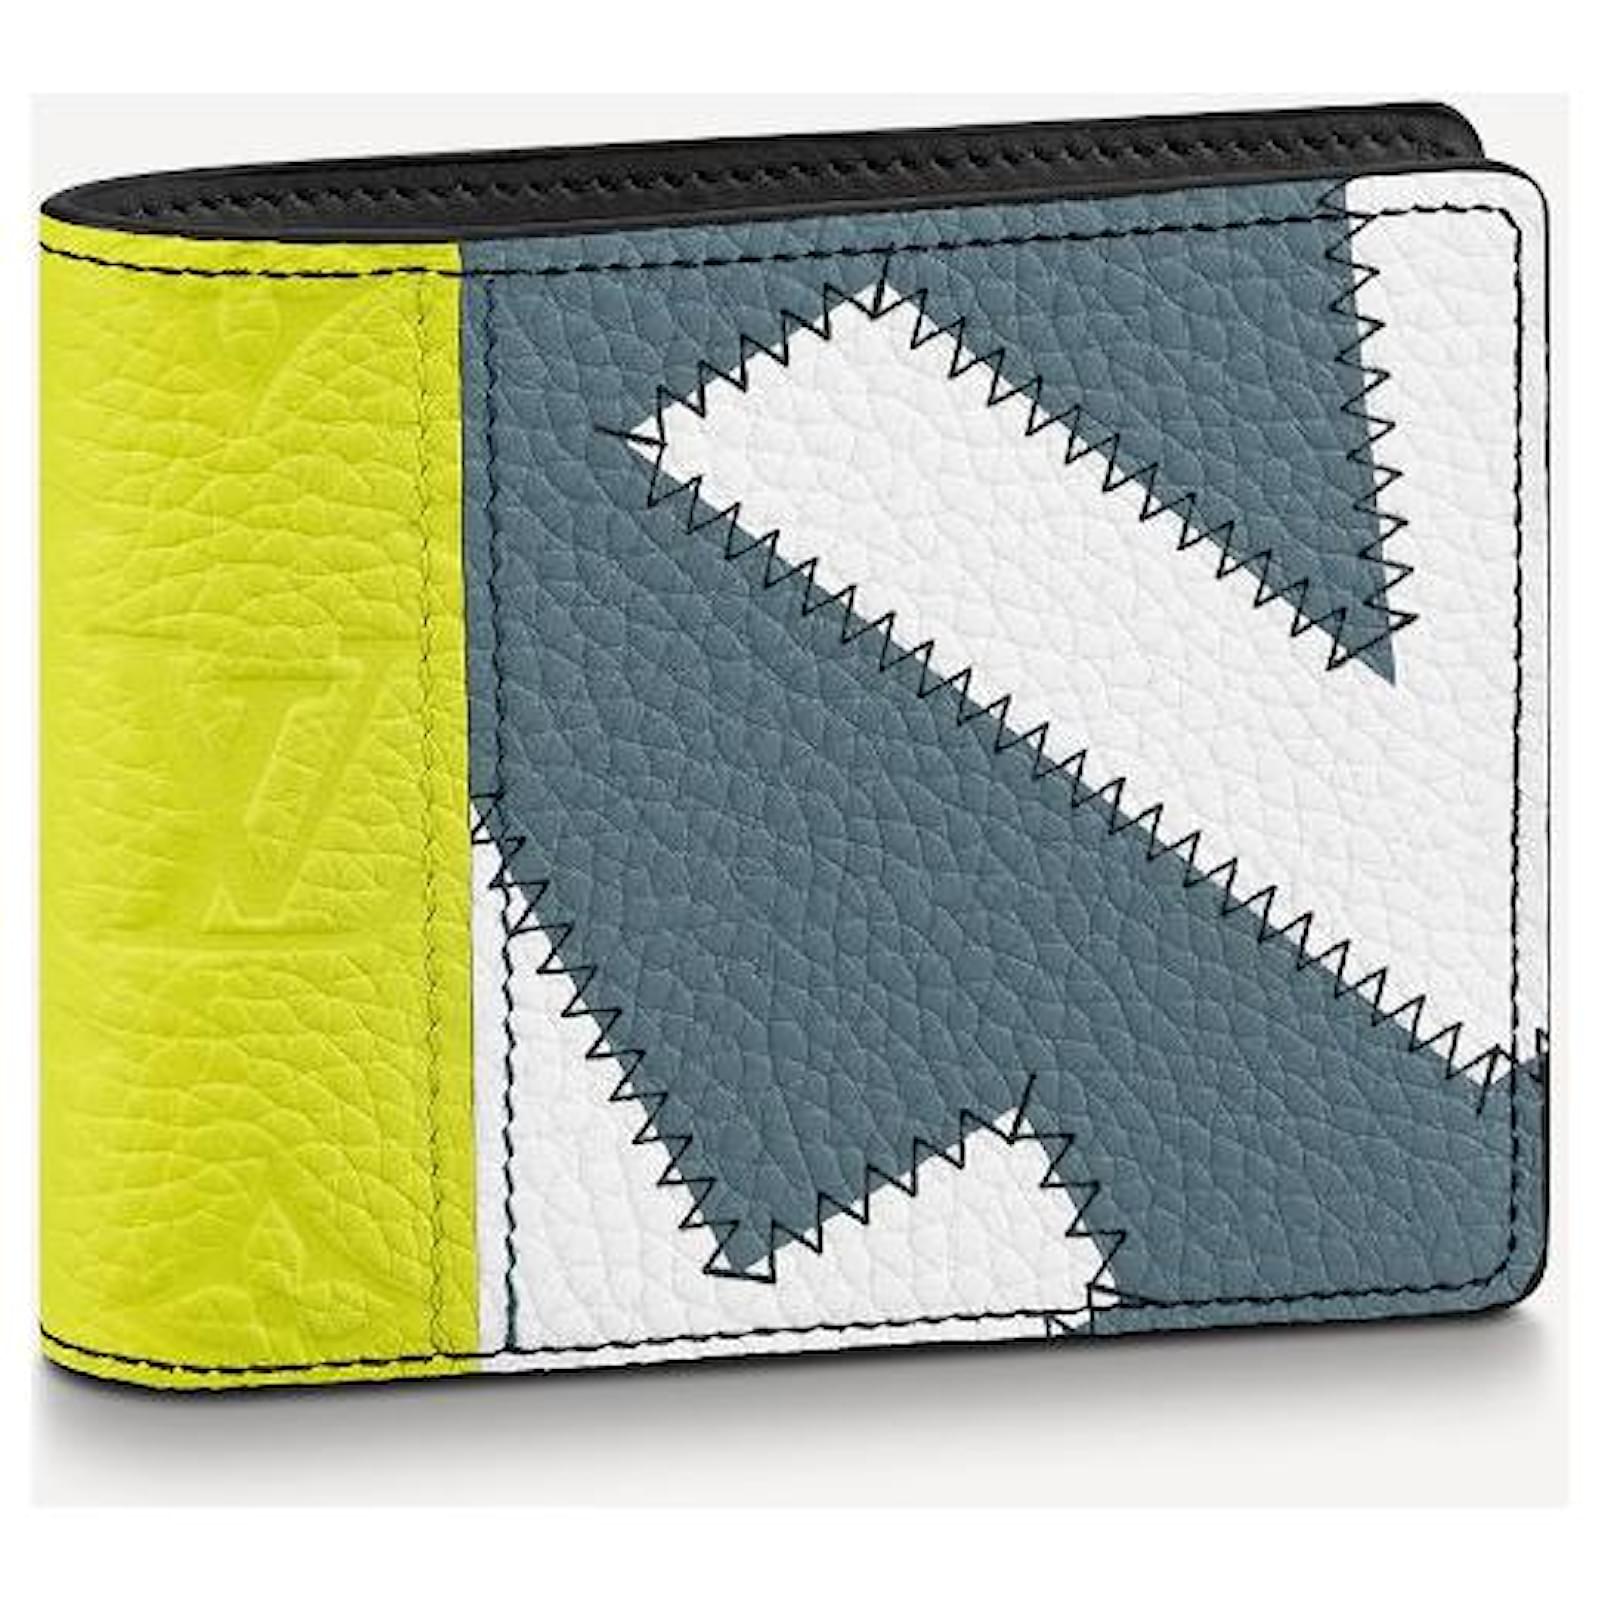 lv pattern wallet